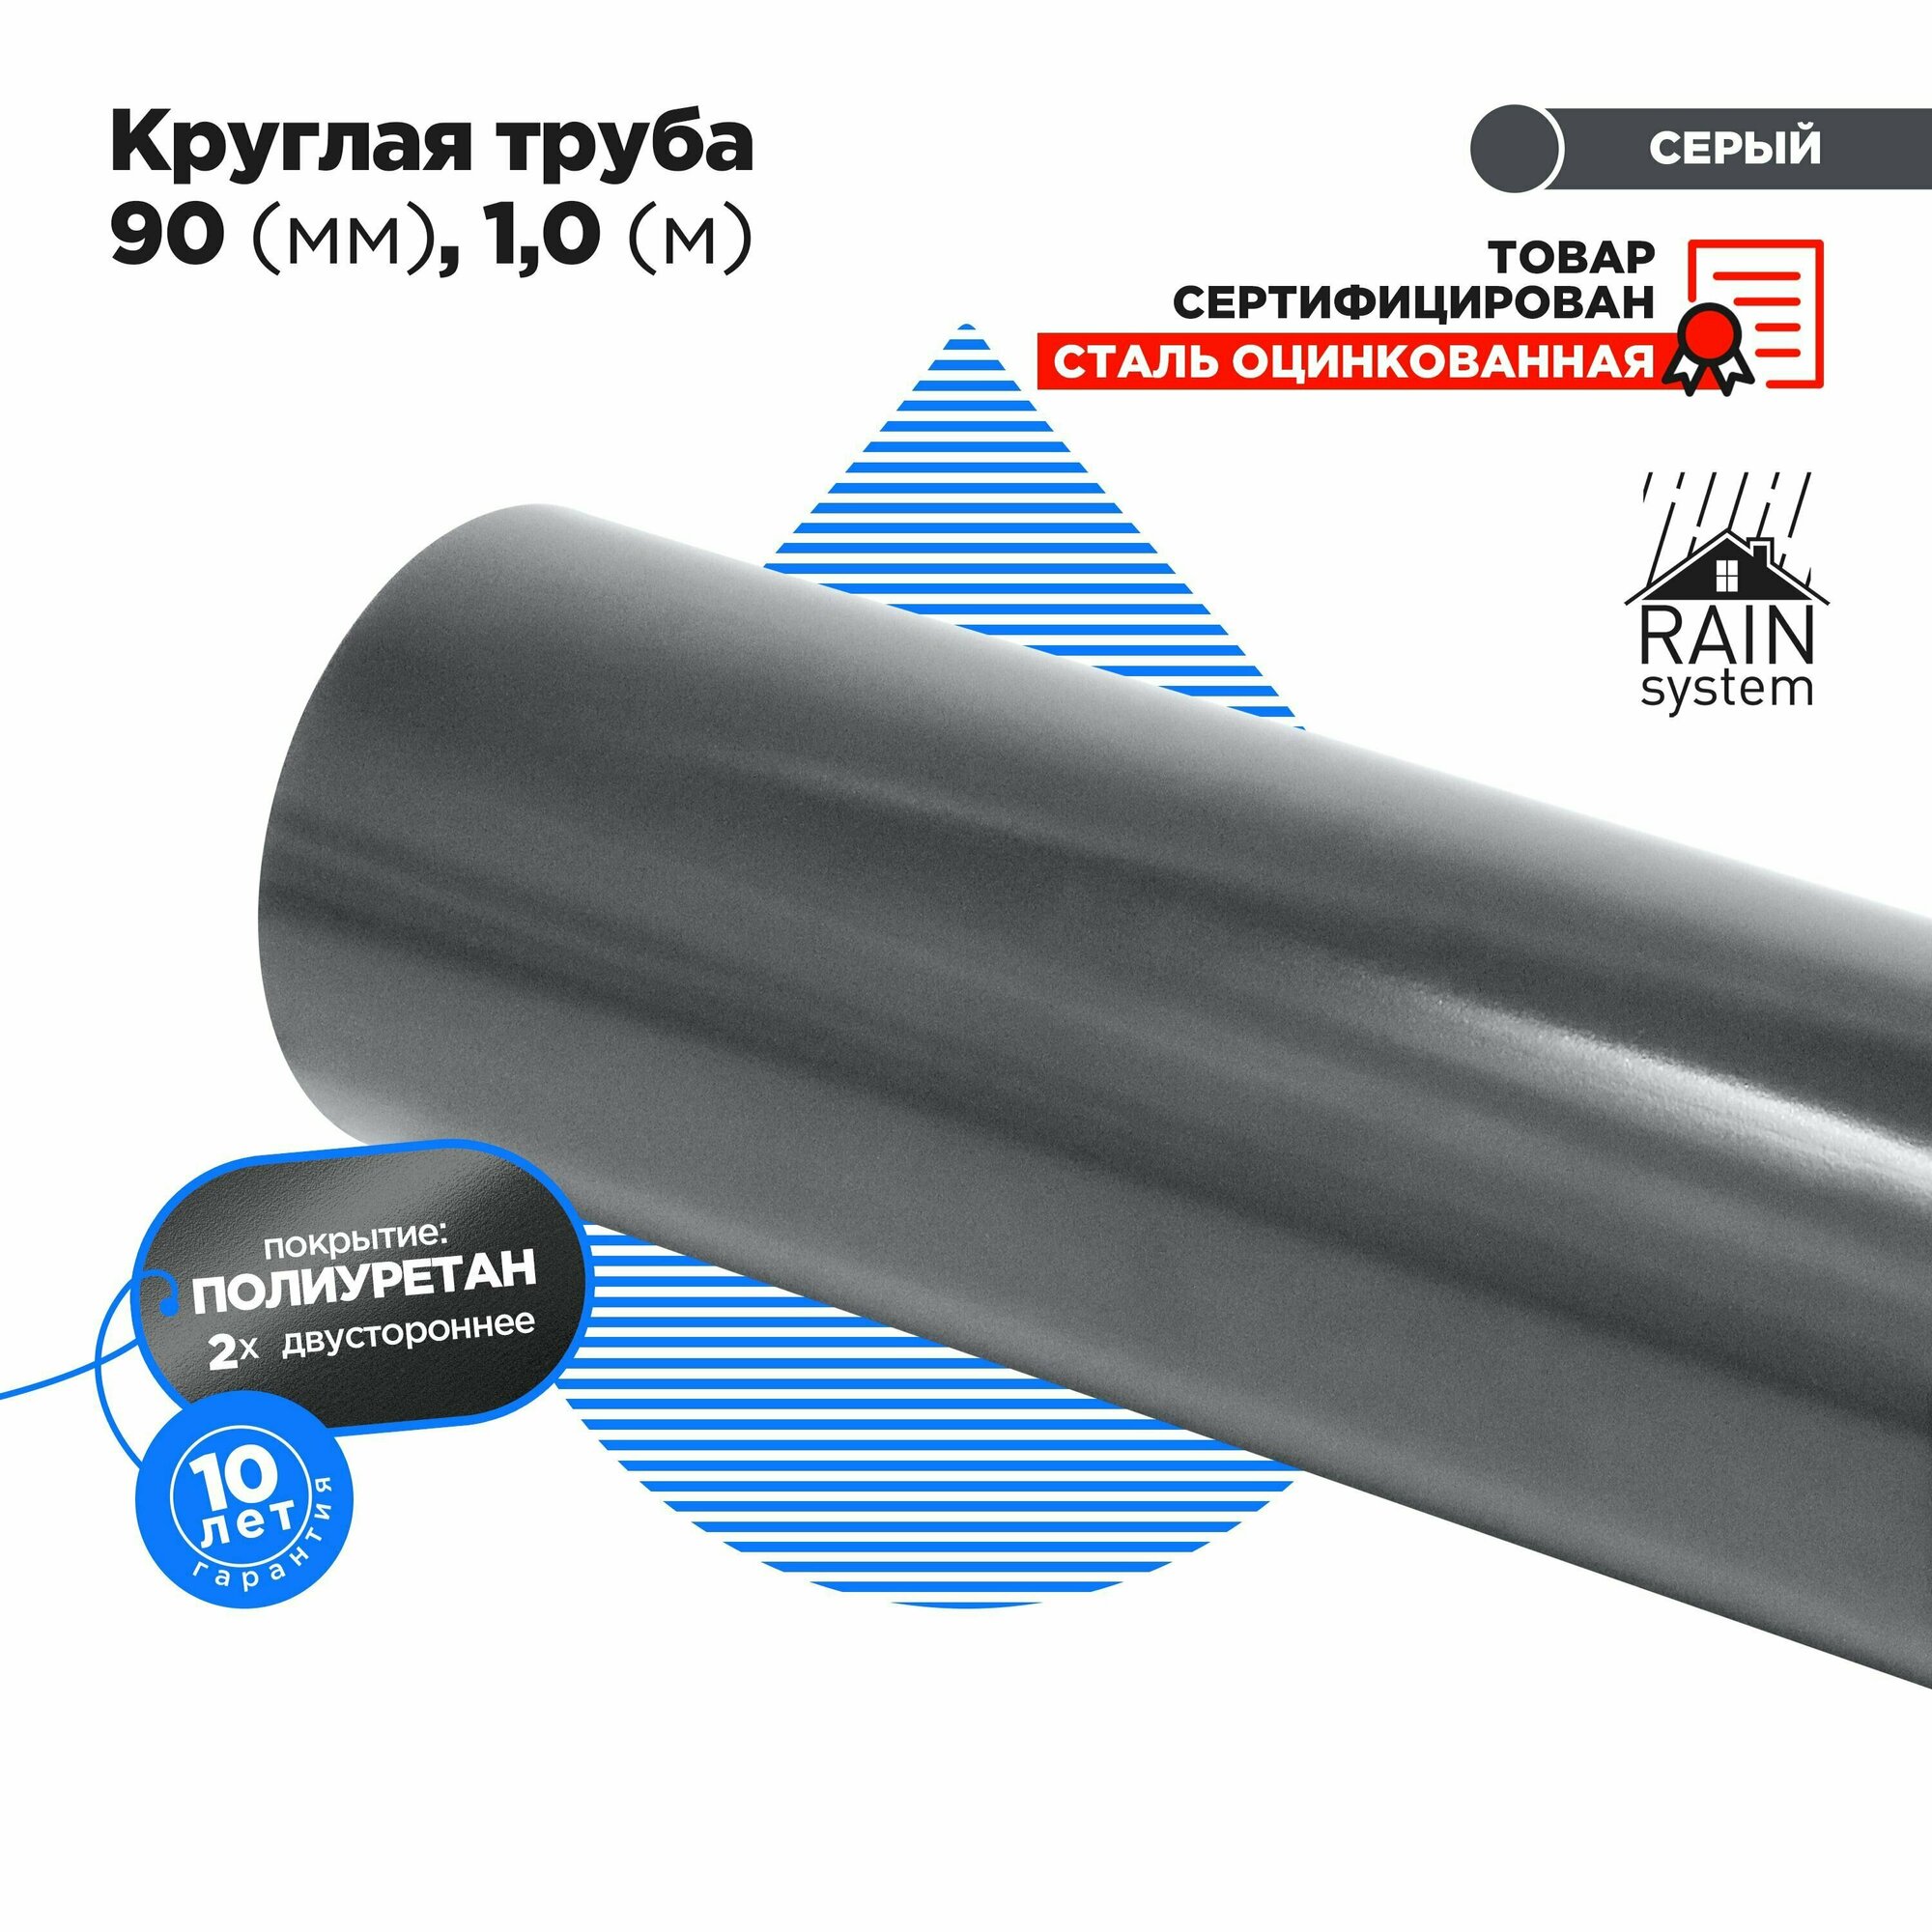 Труба круглая соединит, 90, 1м полиуретан 125/90 водосточной системы RAIN SYSTEM, цвет графит - 1 штука